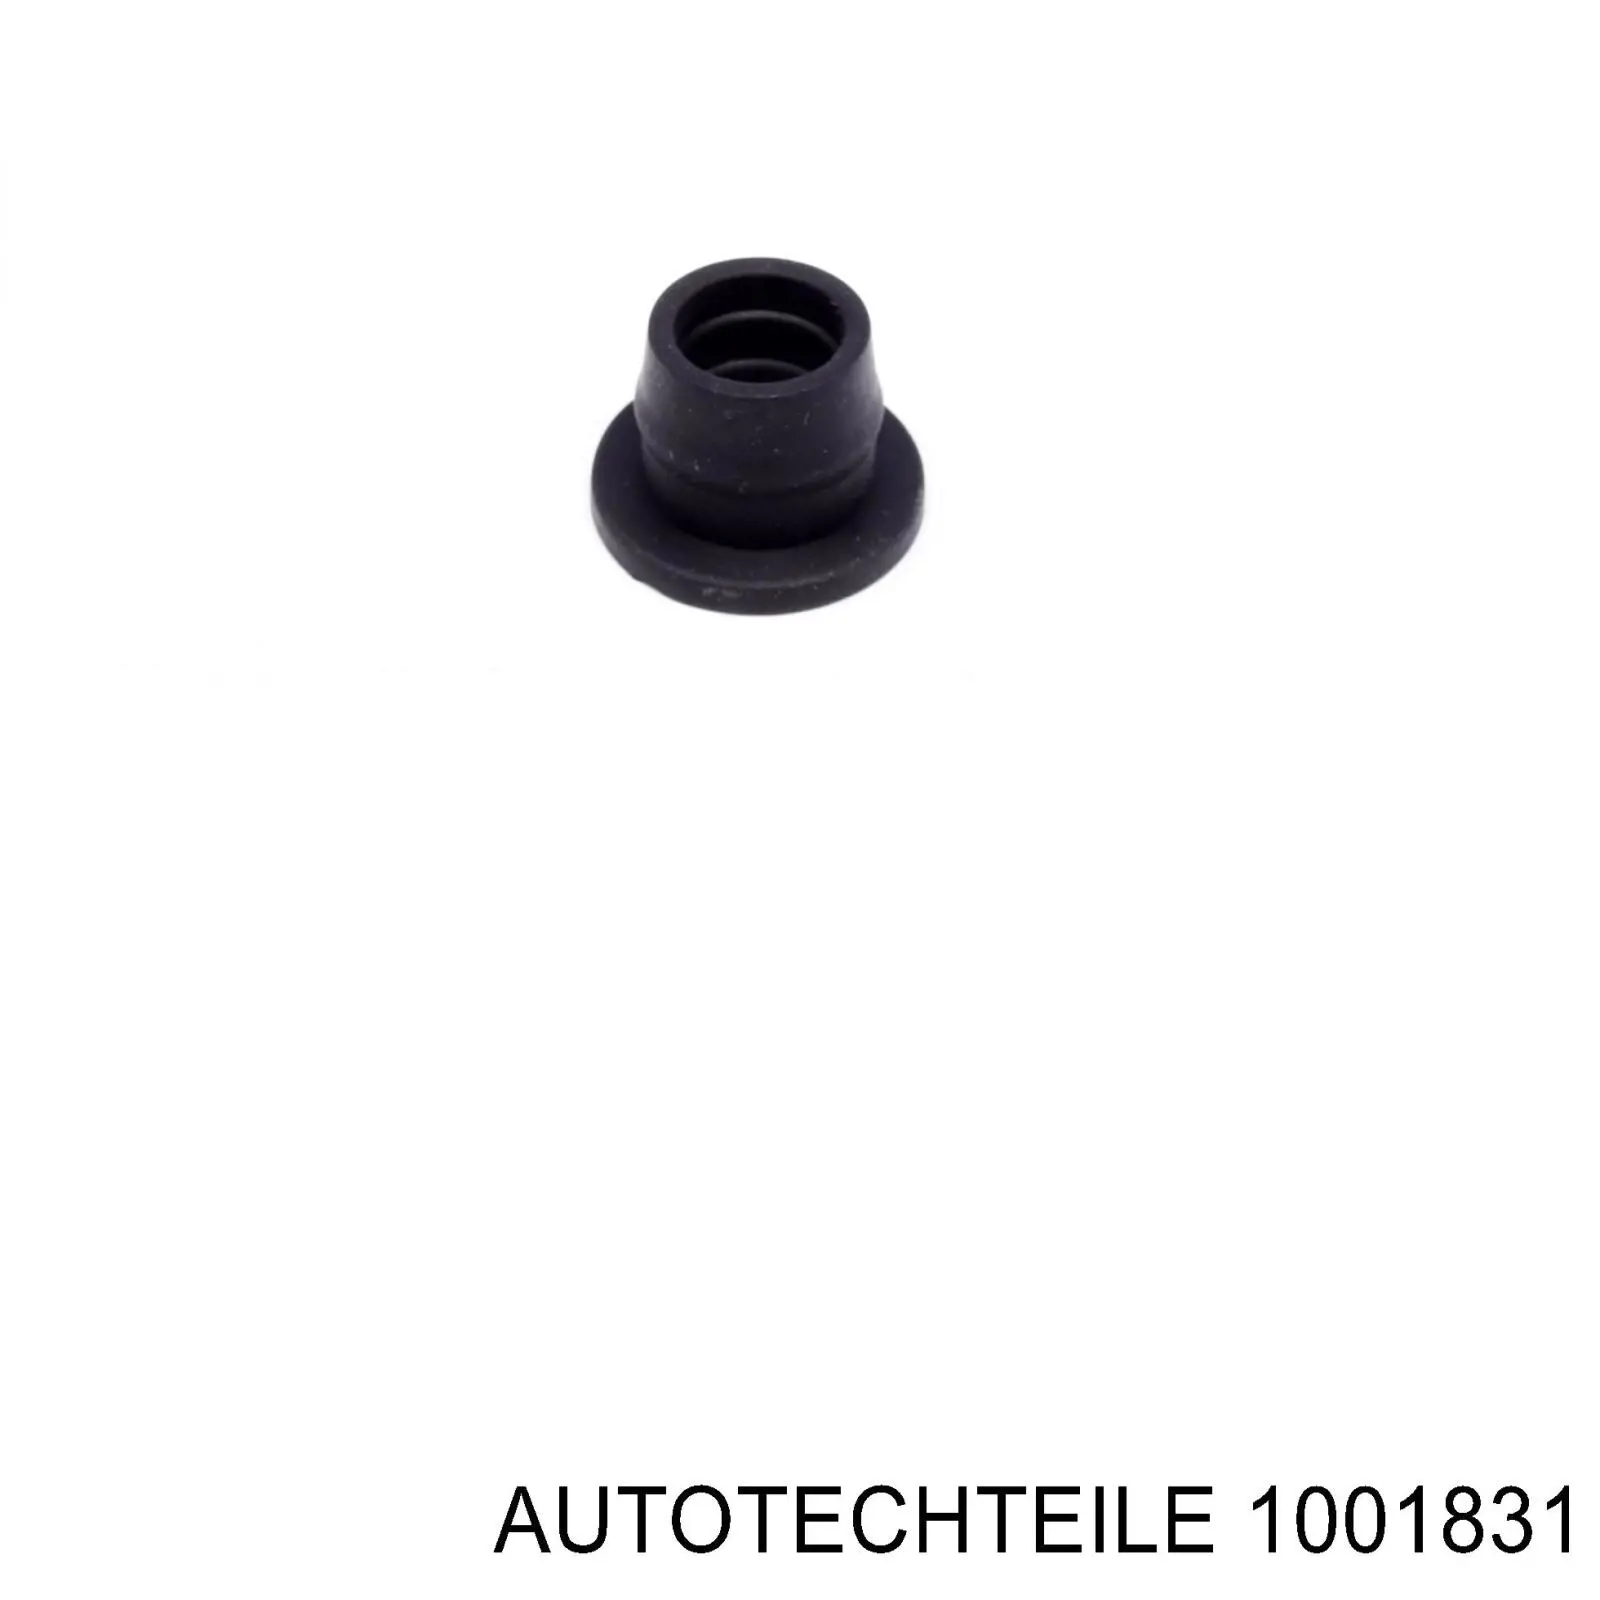 100 1831 Autotechteile прокладка шланга отвода масла от турбины